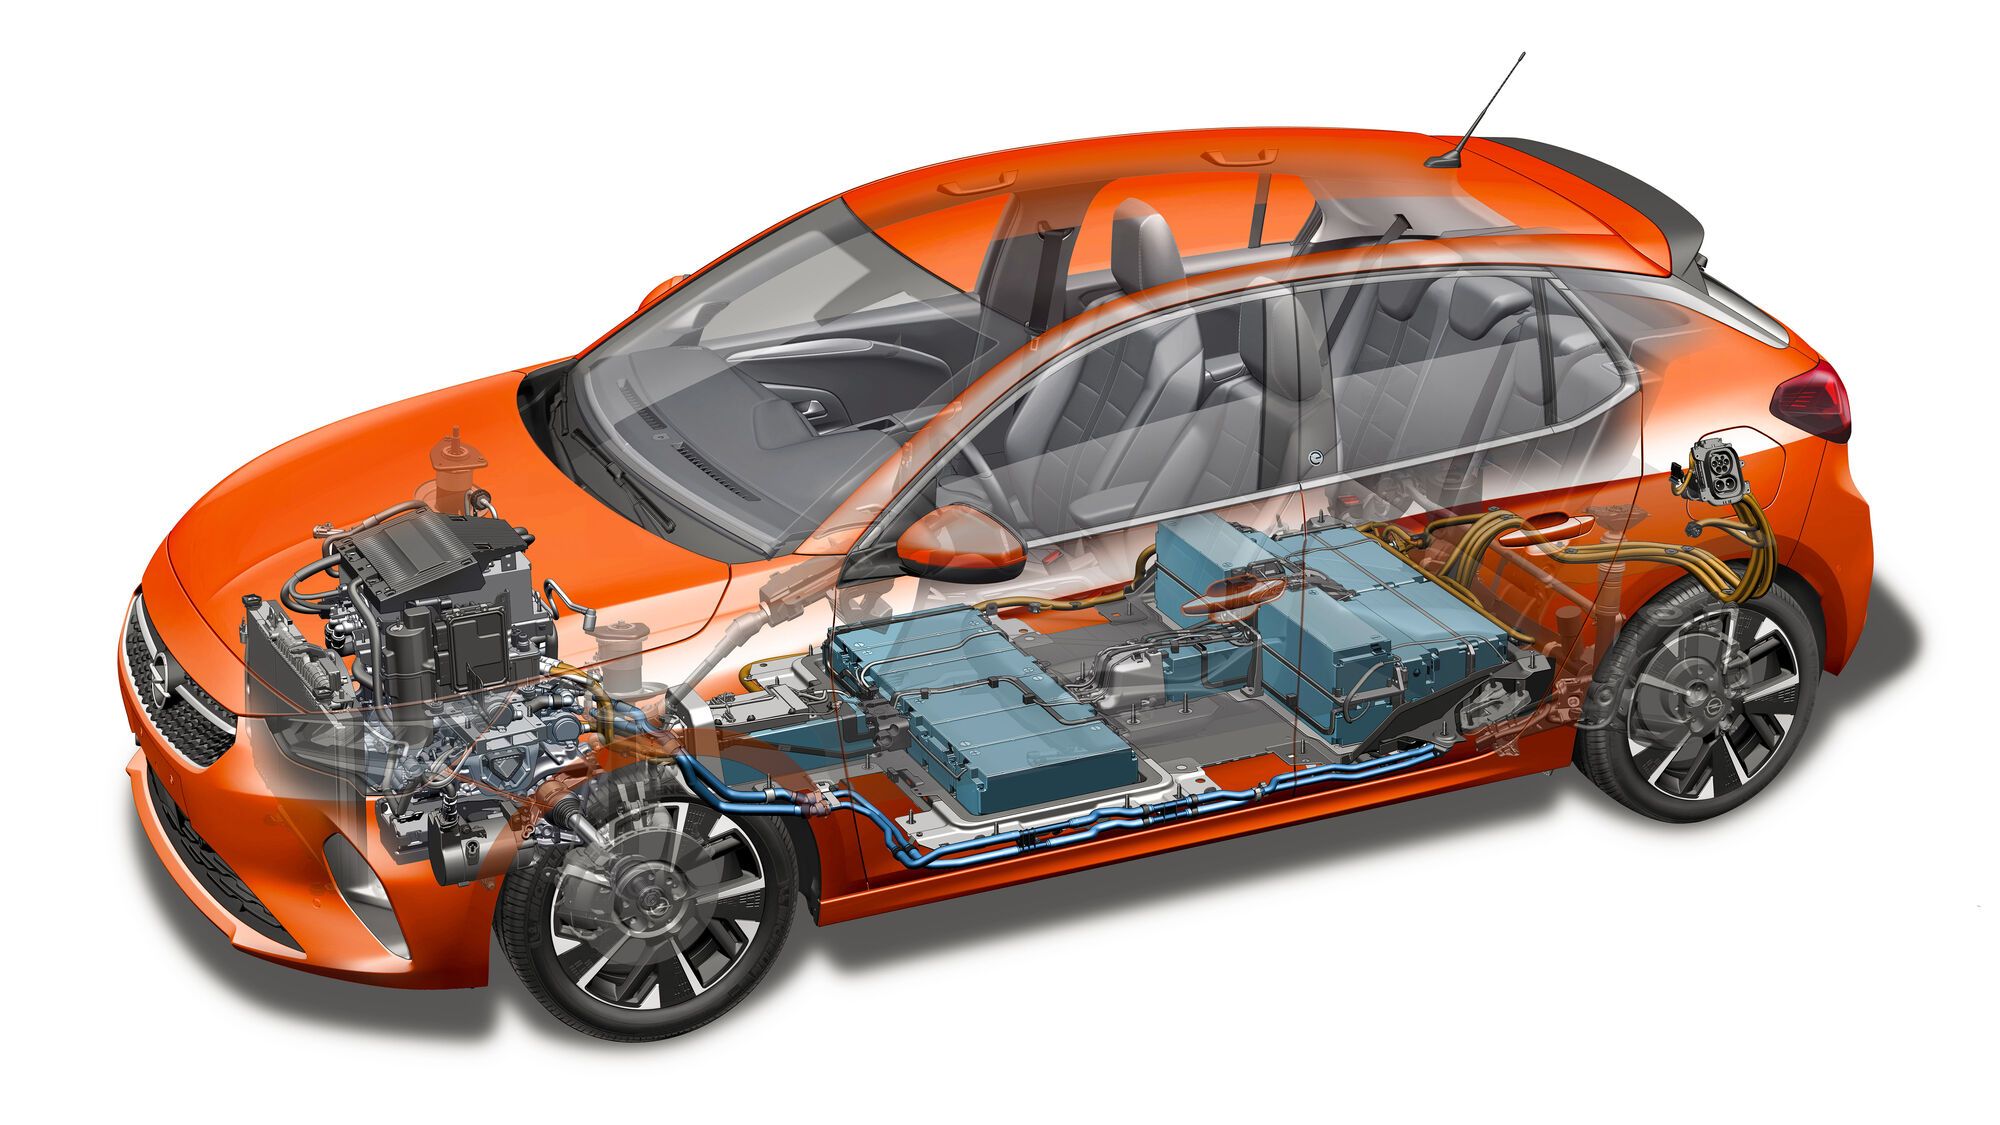 Блоки литий-ионной батареи емкостью 50 кВтч расположены под полом салона Opel Corsa-e. Заявленный пробег на одной зарядке — 330 км по циклу WLTP